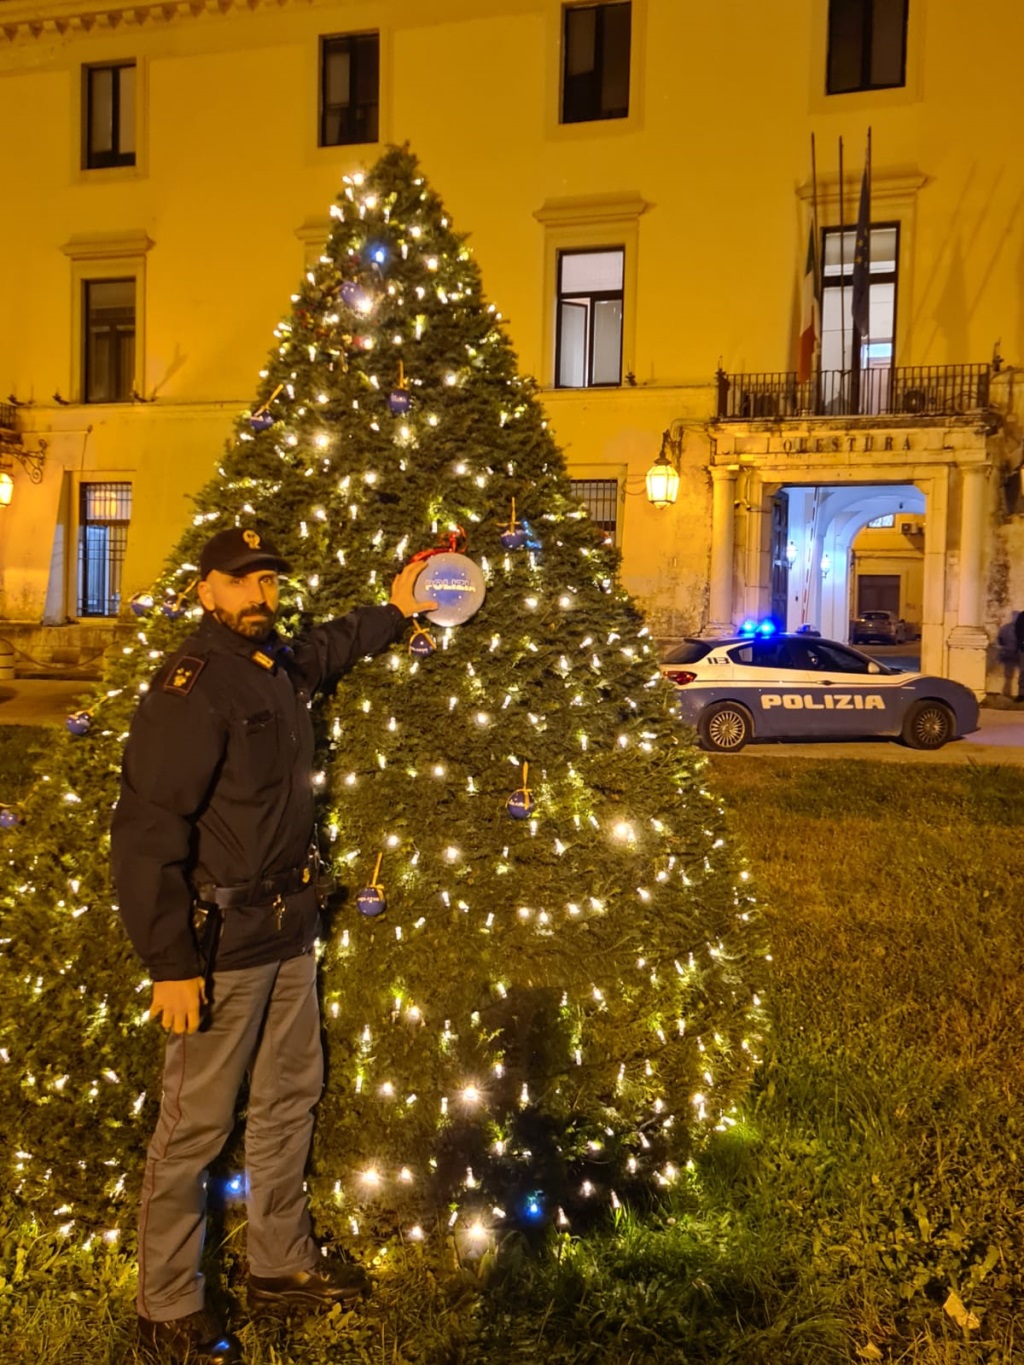 Gli alberi di Natale nelle città d’Italia con le decorazioni natalizie della Polizia di Stato: Caserta